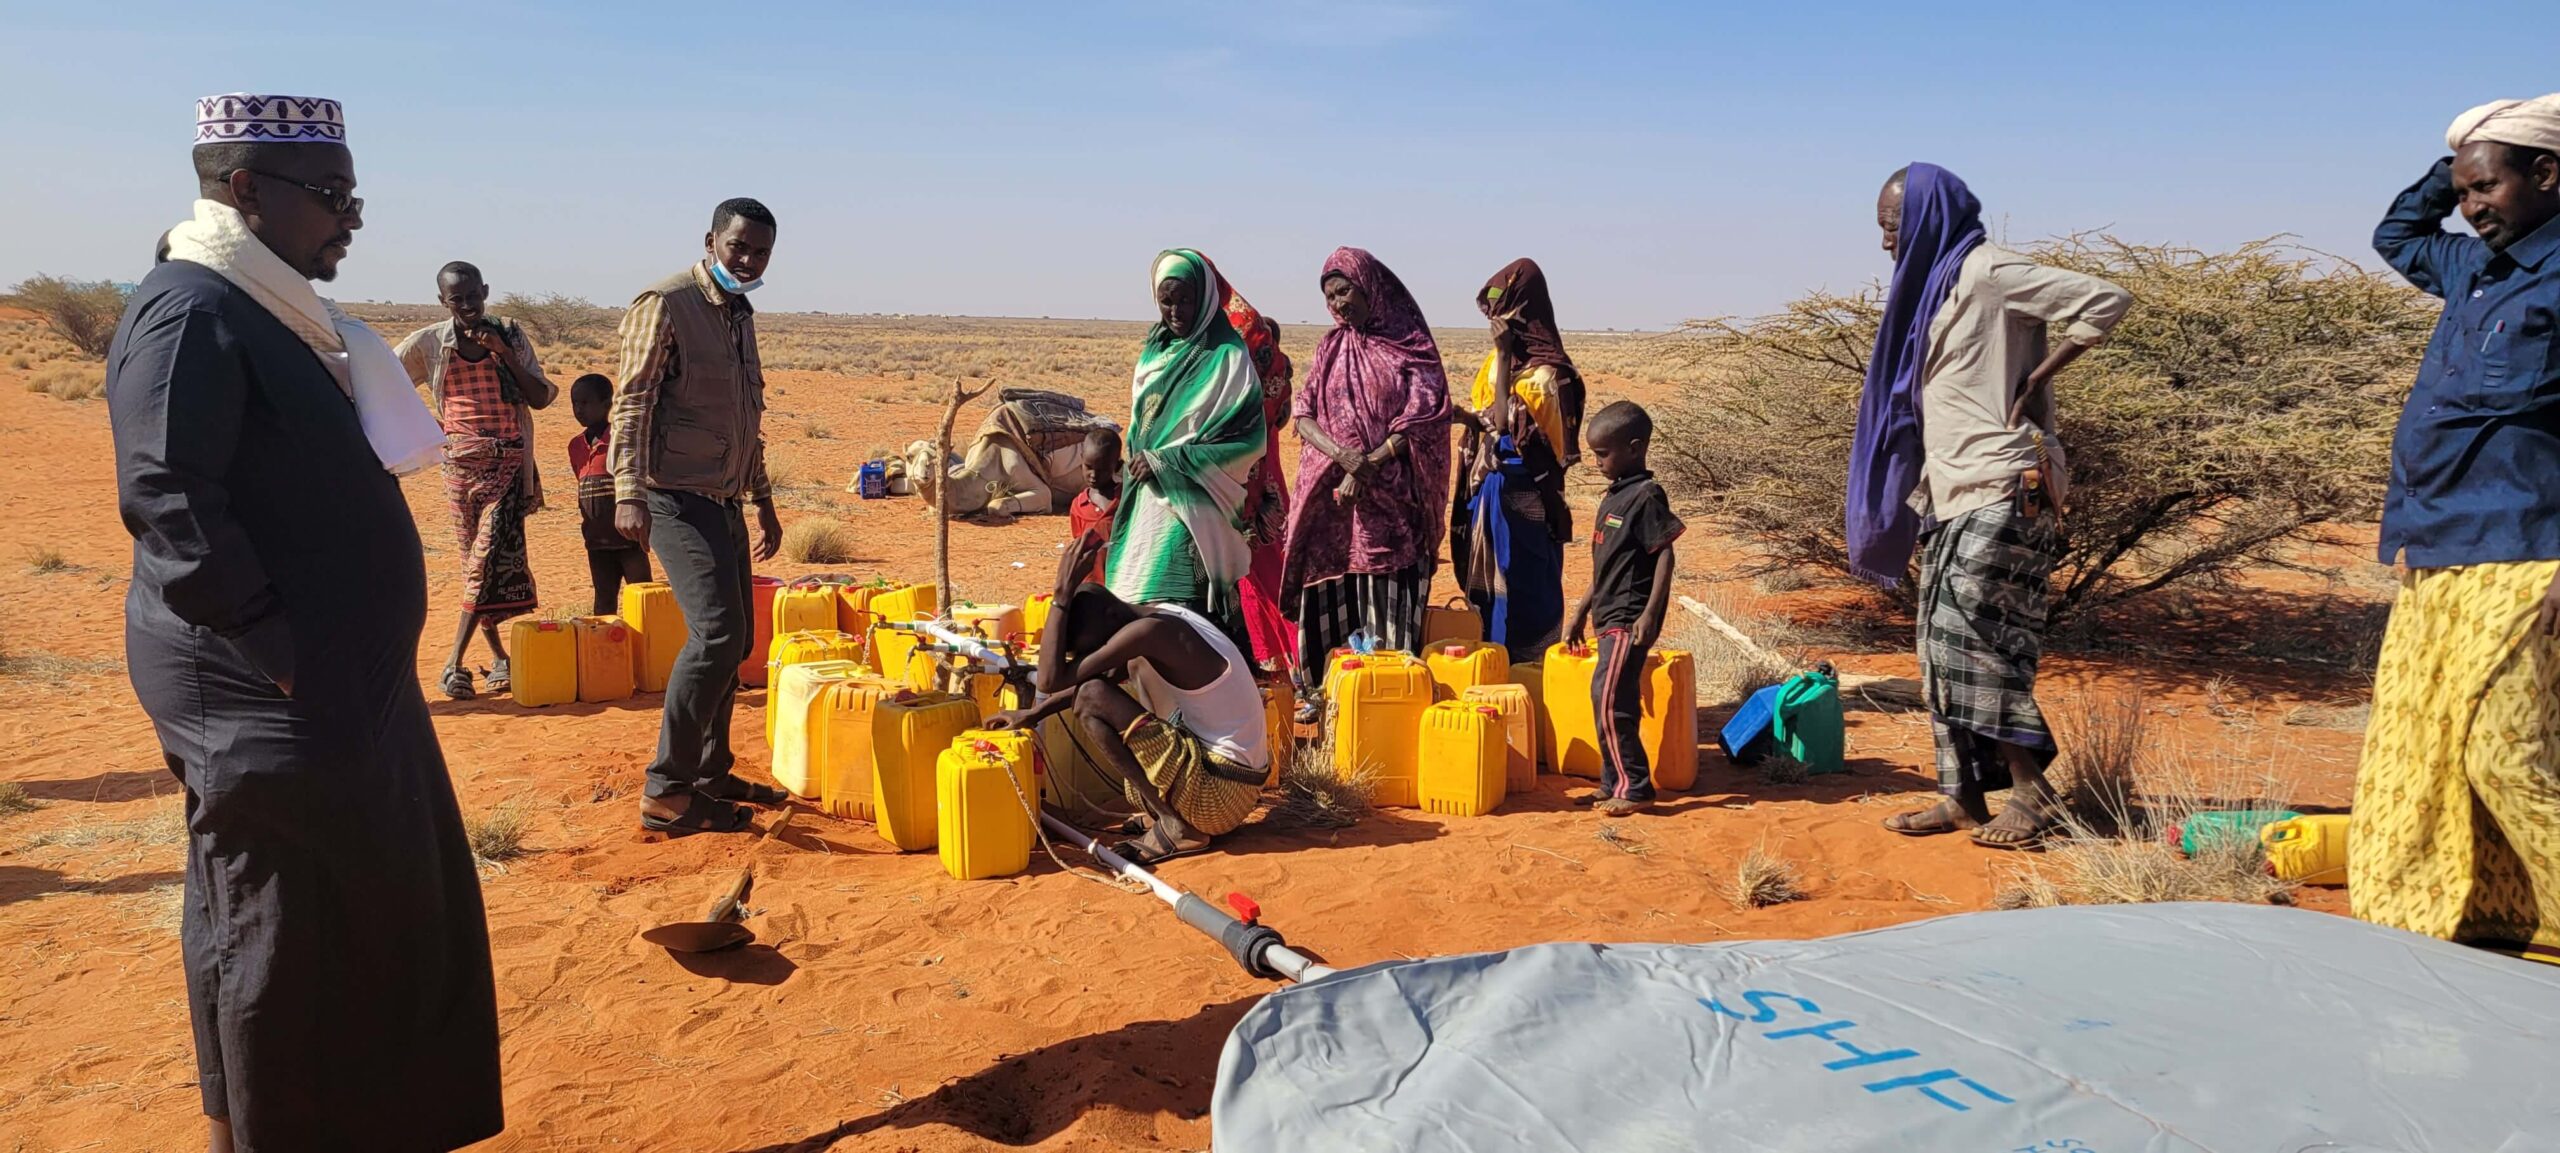 Water distribution in Somalia.